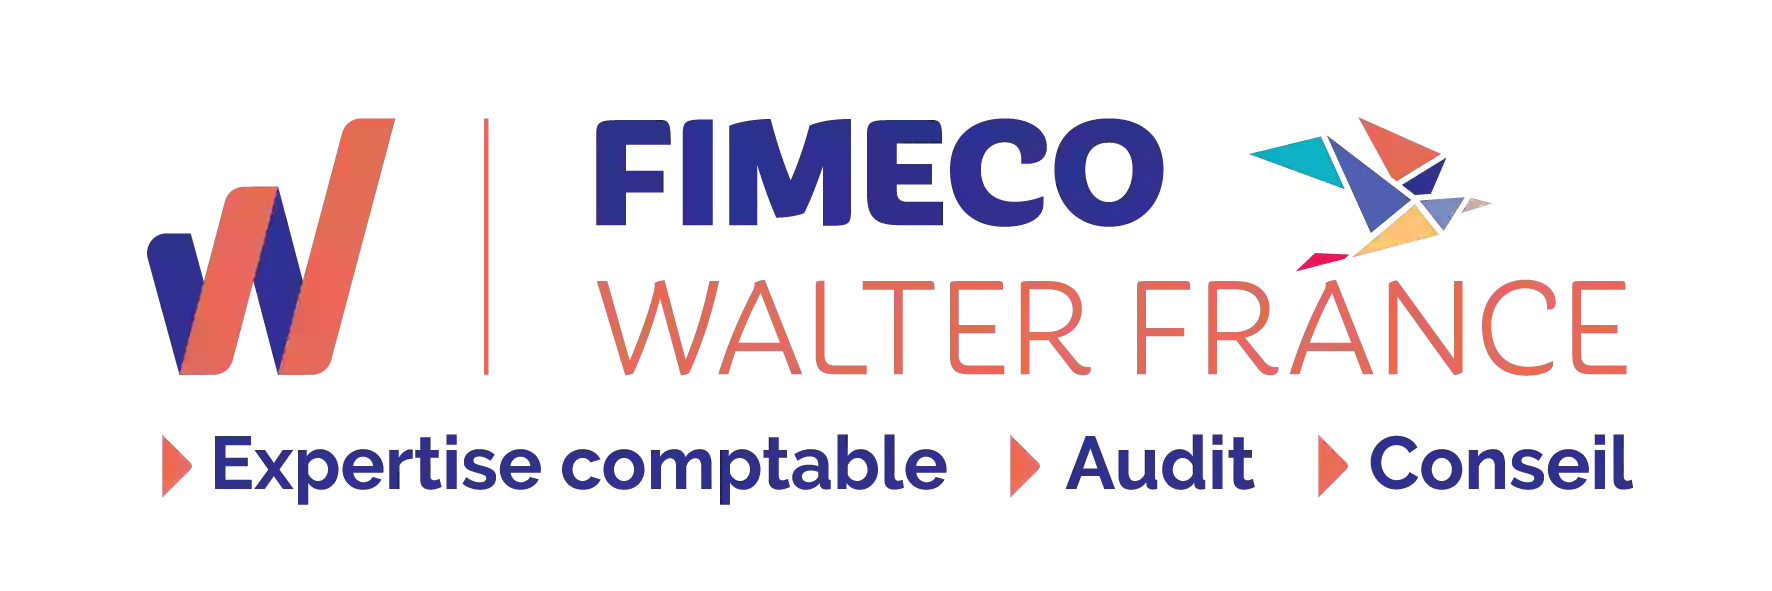 FIMECO Walter France -COMPTABLE -EXPERT COMPTABLE- Chalais - Montguyon -La Roche Chalais- Saint Aulaye-Montpon- Charente